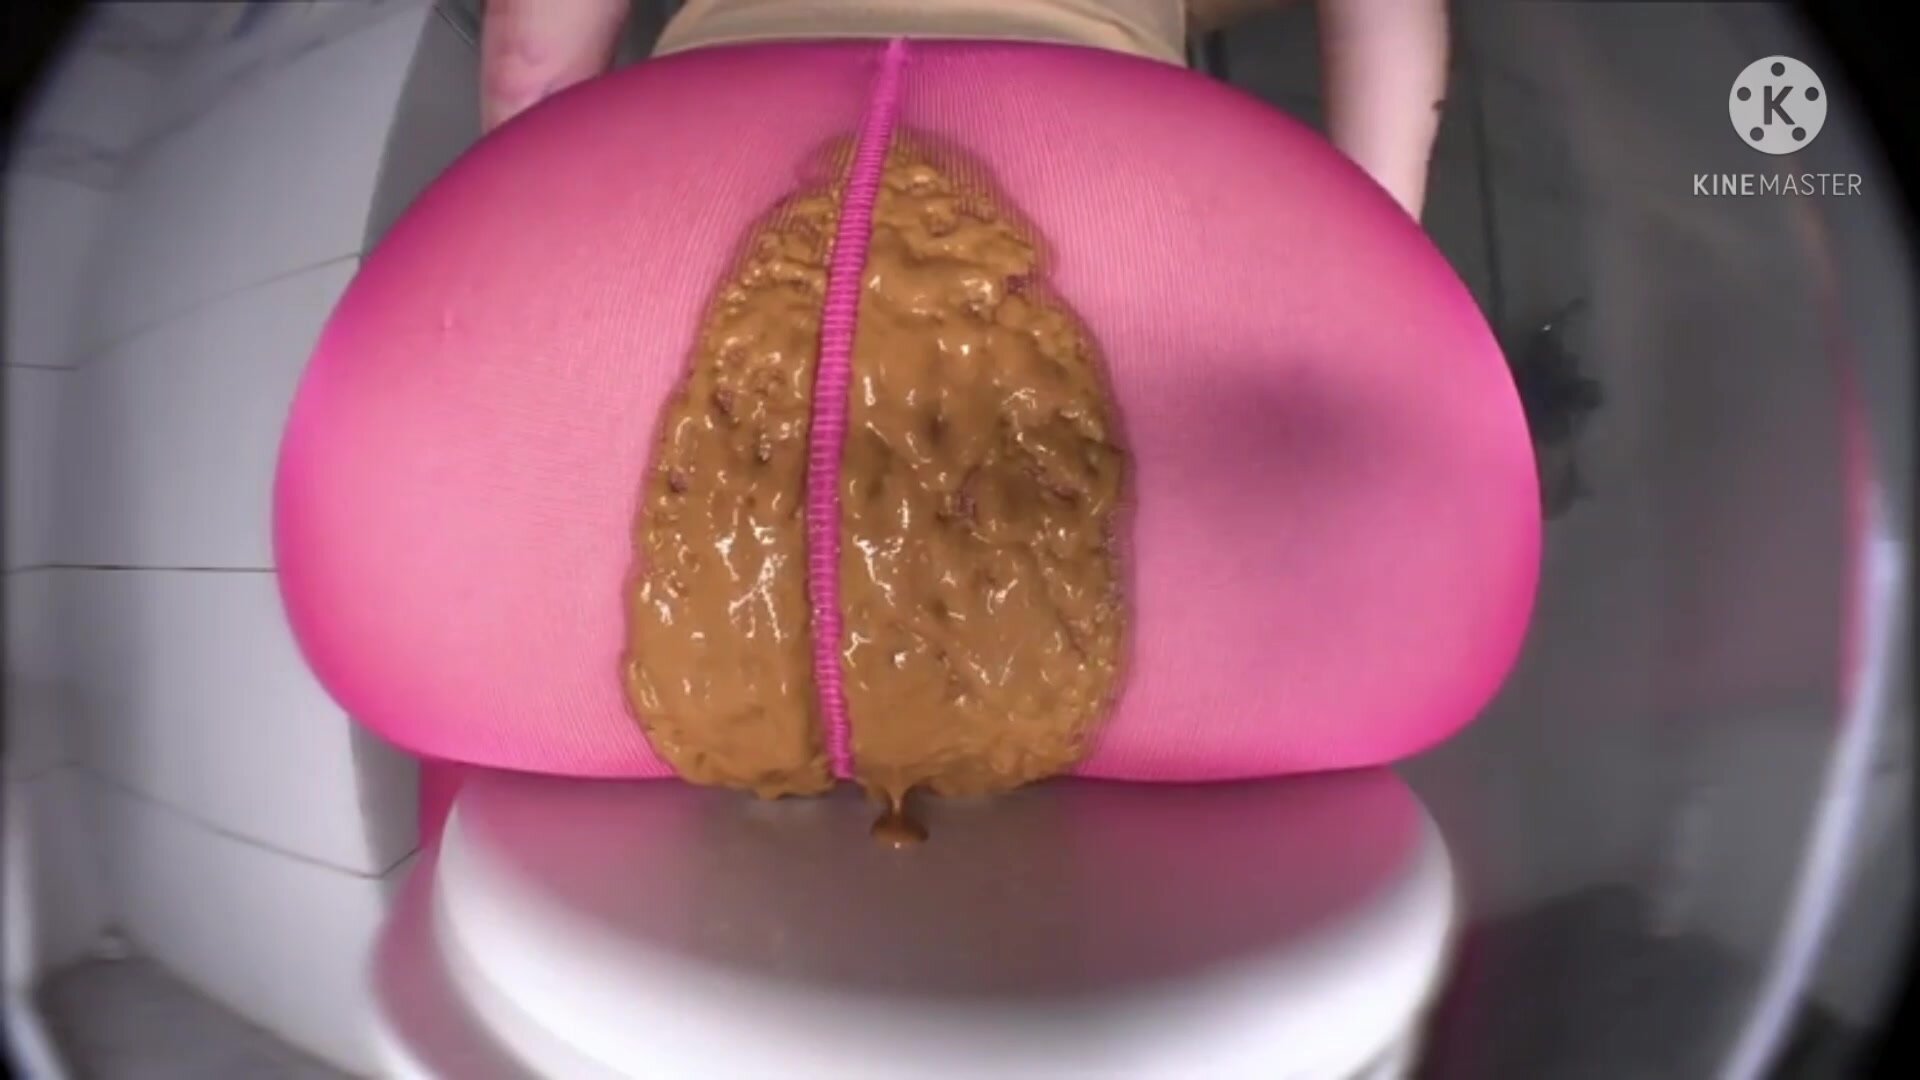 Big Ass Girls - Huge ass girl has diarrhea in her pink leggings - ThisVid.com